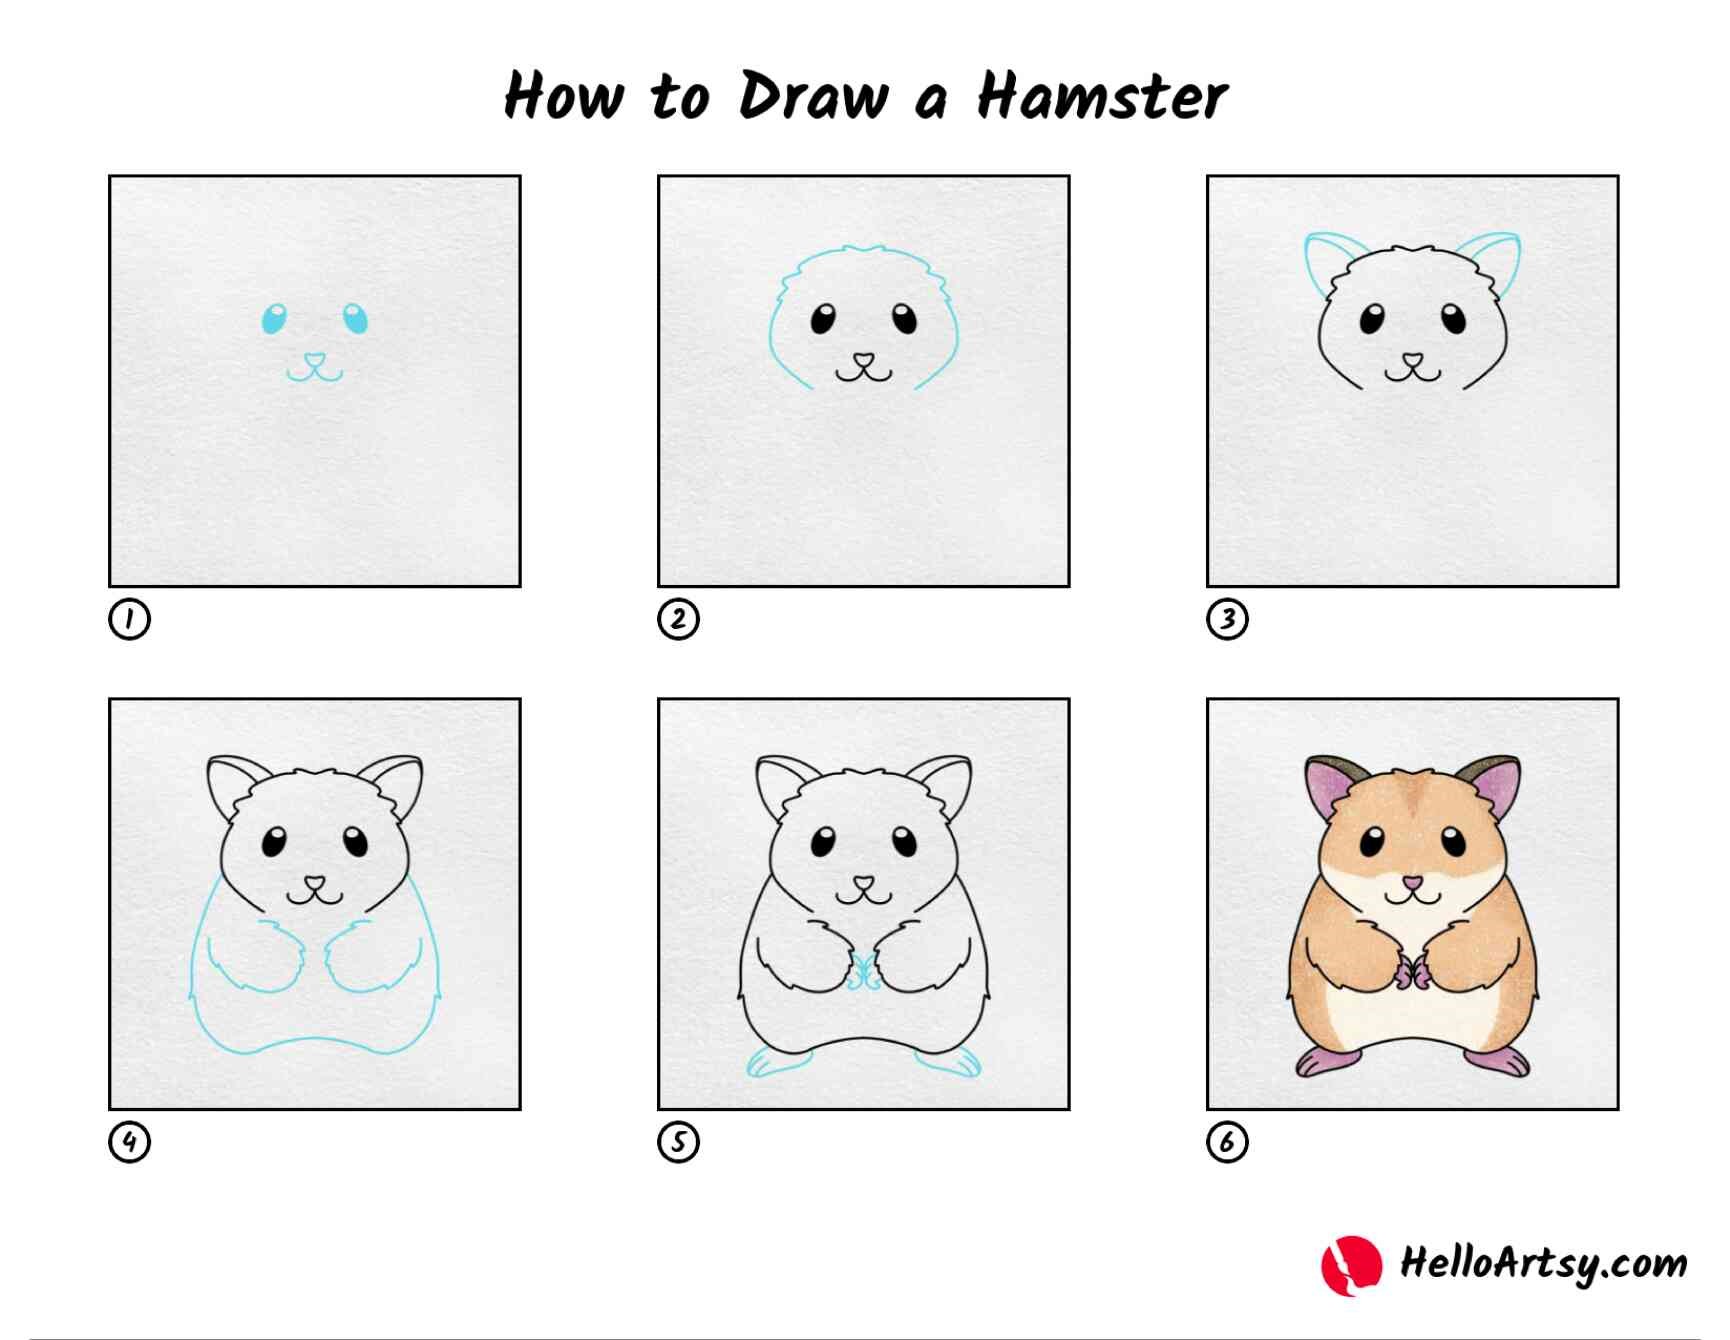 Idee für Hamster 1 zeichnen ideen